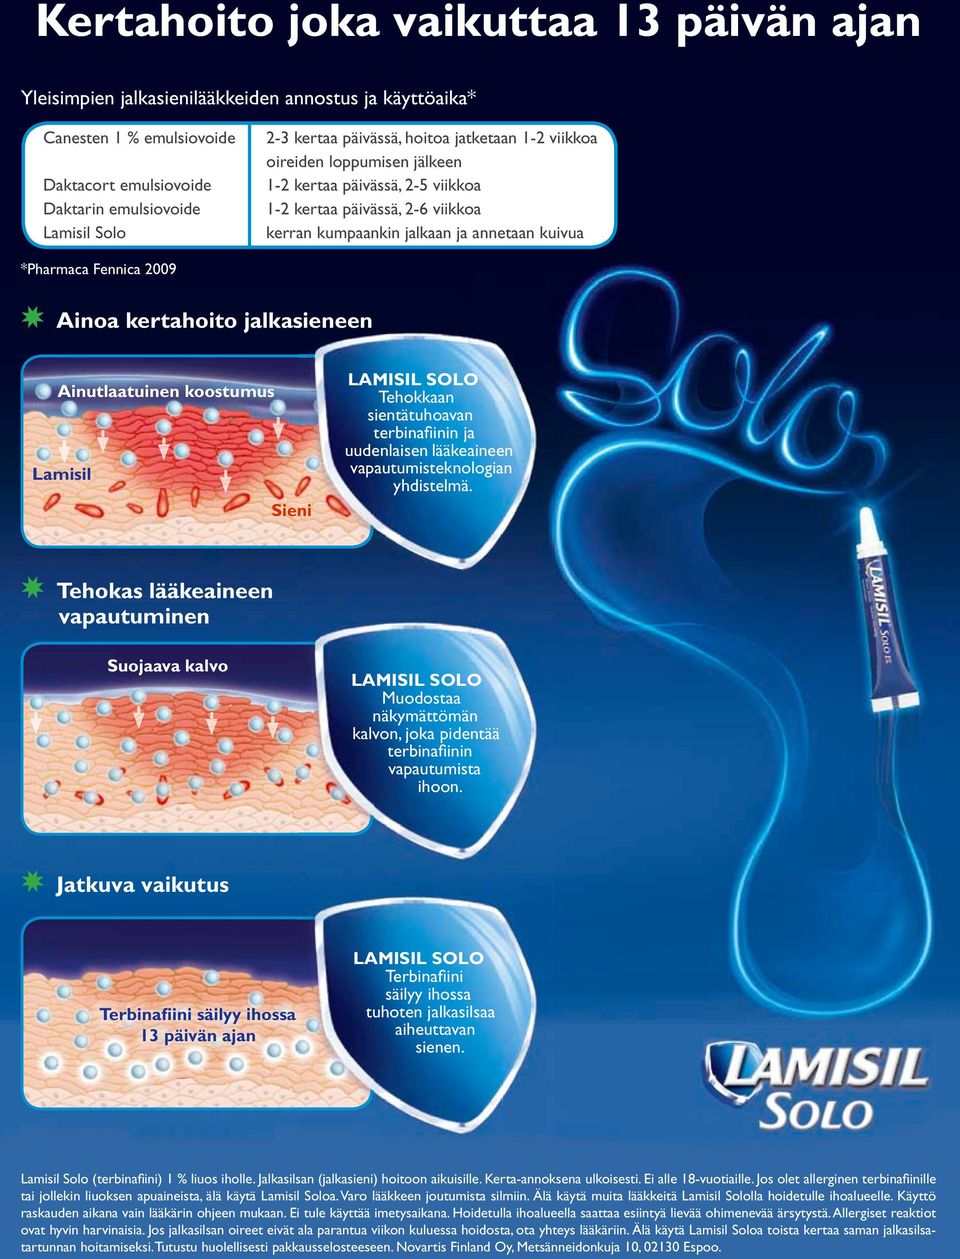 2009 Ainoa kertahoito jalkasieneen Ainutlaatuinen koostumus Lamisil Sieni LAMISIL SOLO Tehokkaan sientätuhoavan terbinafiinin ja uudenlaisen lääkeaineen vapautumisteknologian yhdistelmä.